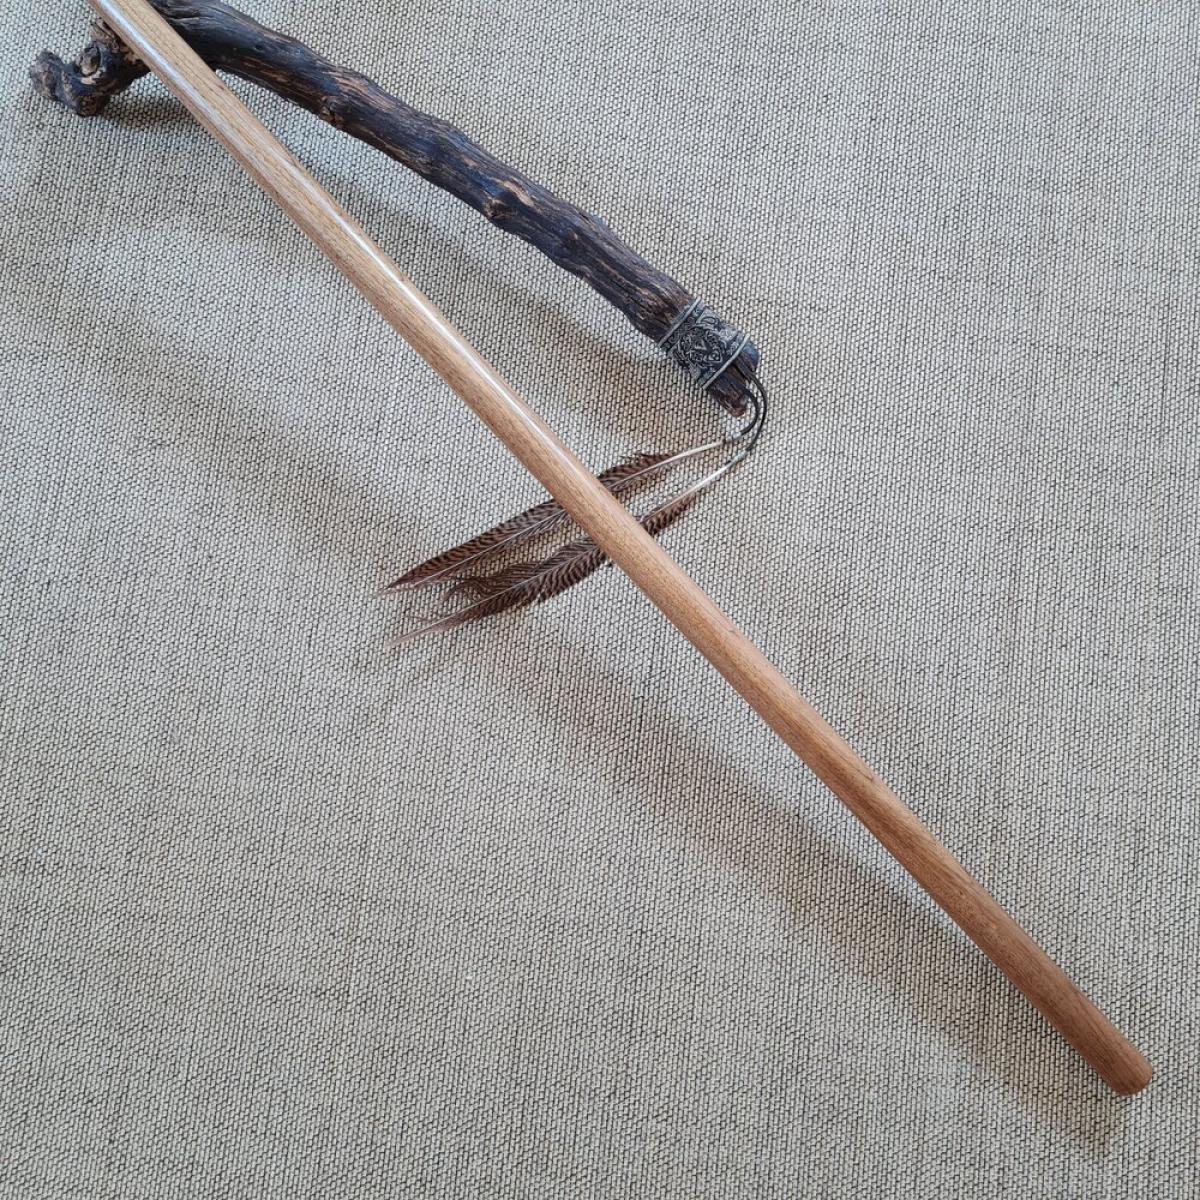 Bo-Stab aus Supa-Holz - Länge 182 cm online kaufen » www.bokken-shop.de  passend für Aikido, Kobudō, Bujinkan, Koryu, Jodo✓ Dein Budo-Fachhändler!